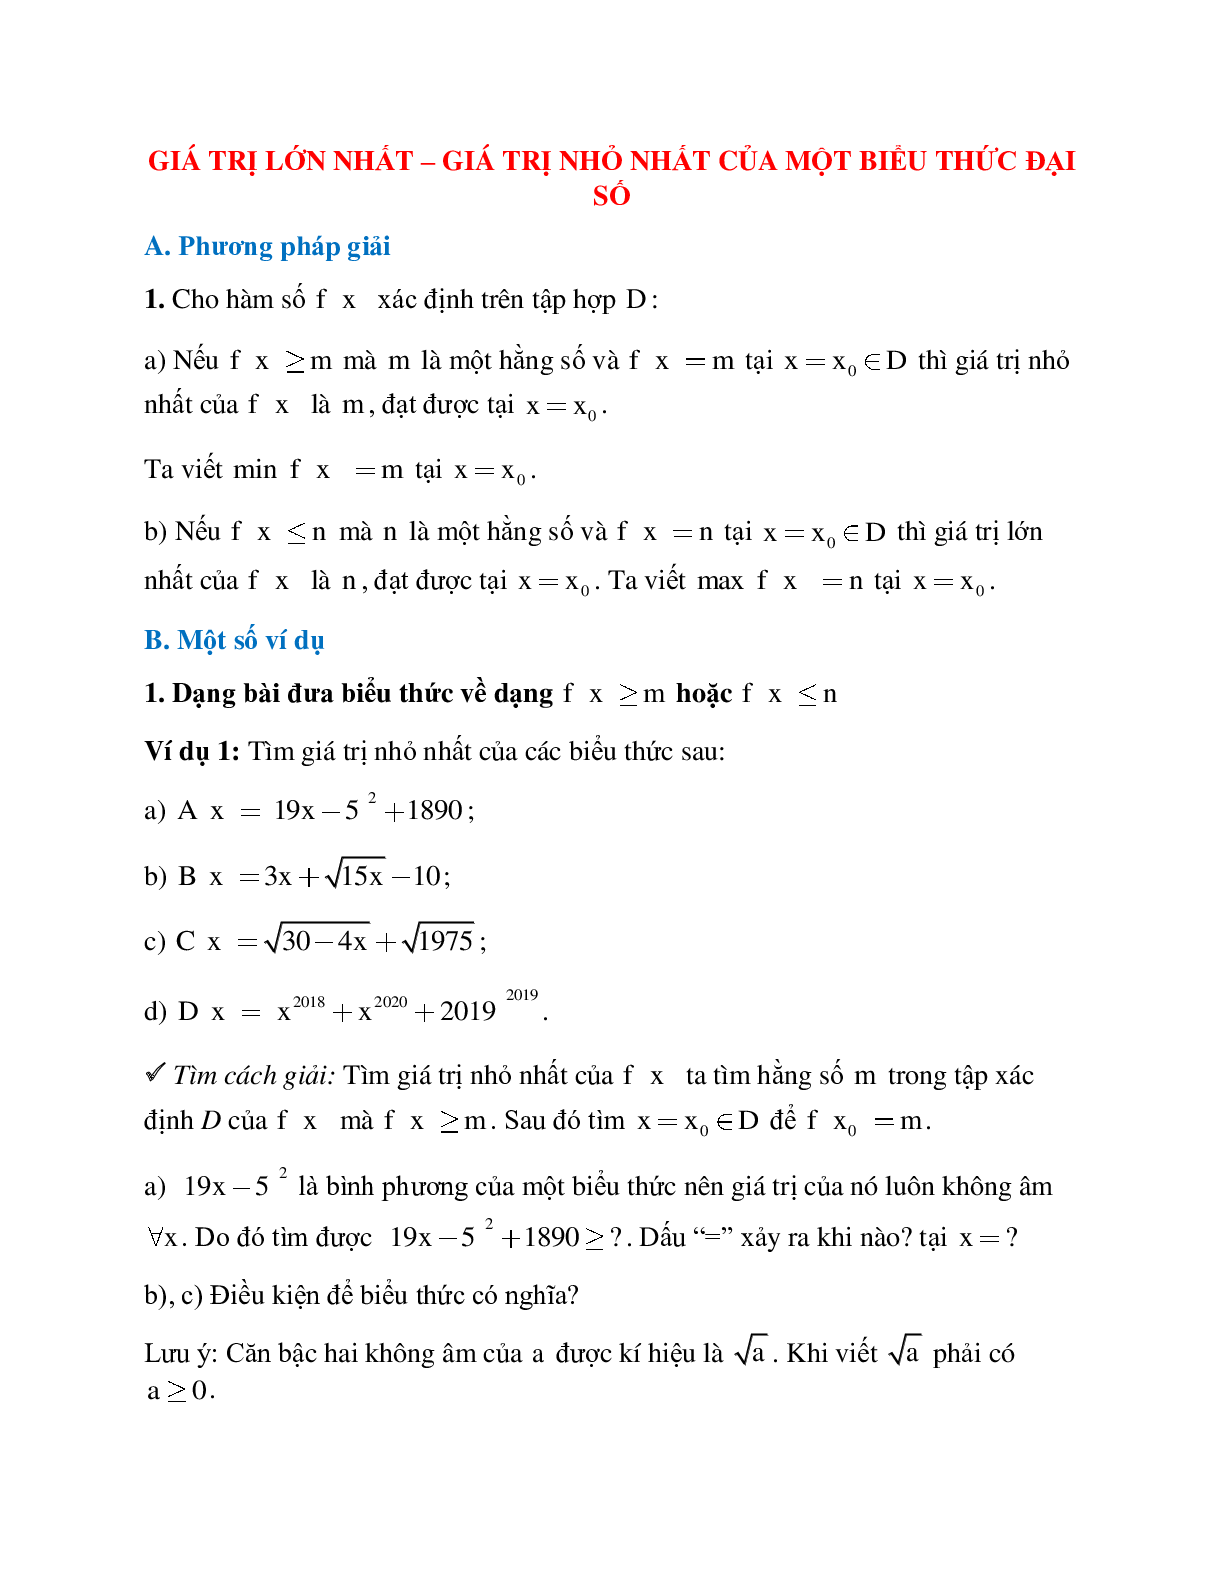 Hệ thống bài tập về Giá trị lớn nhất - Giá trị nhỏ nhất của một biểu thức đại số có lời giải (trang 1)